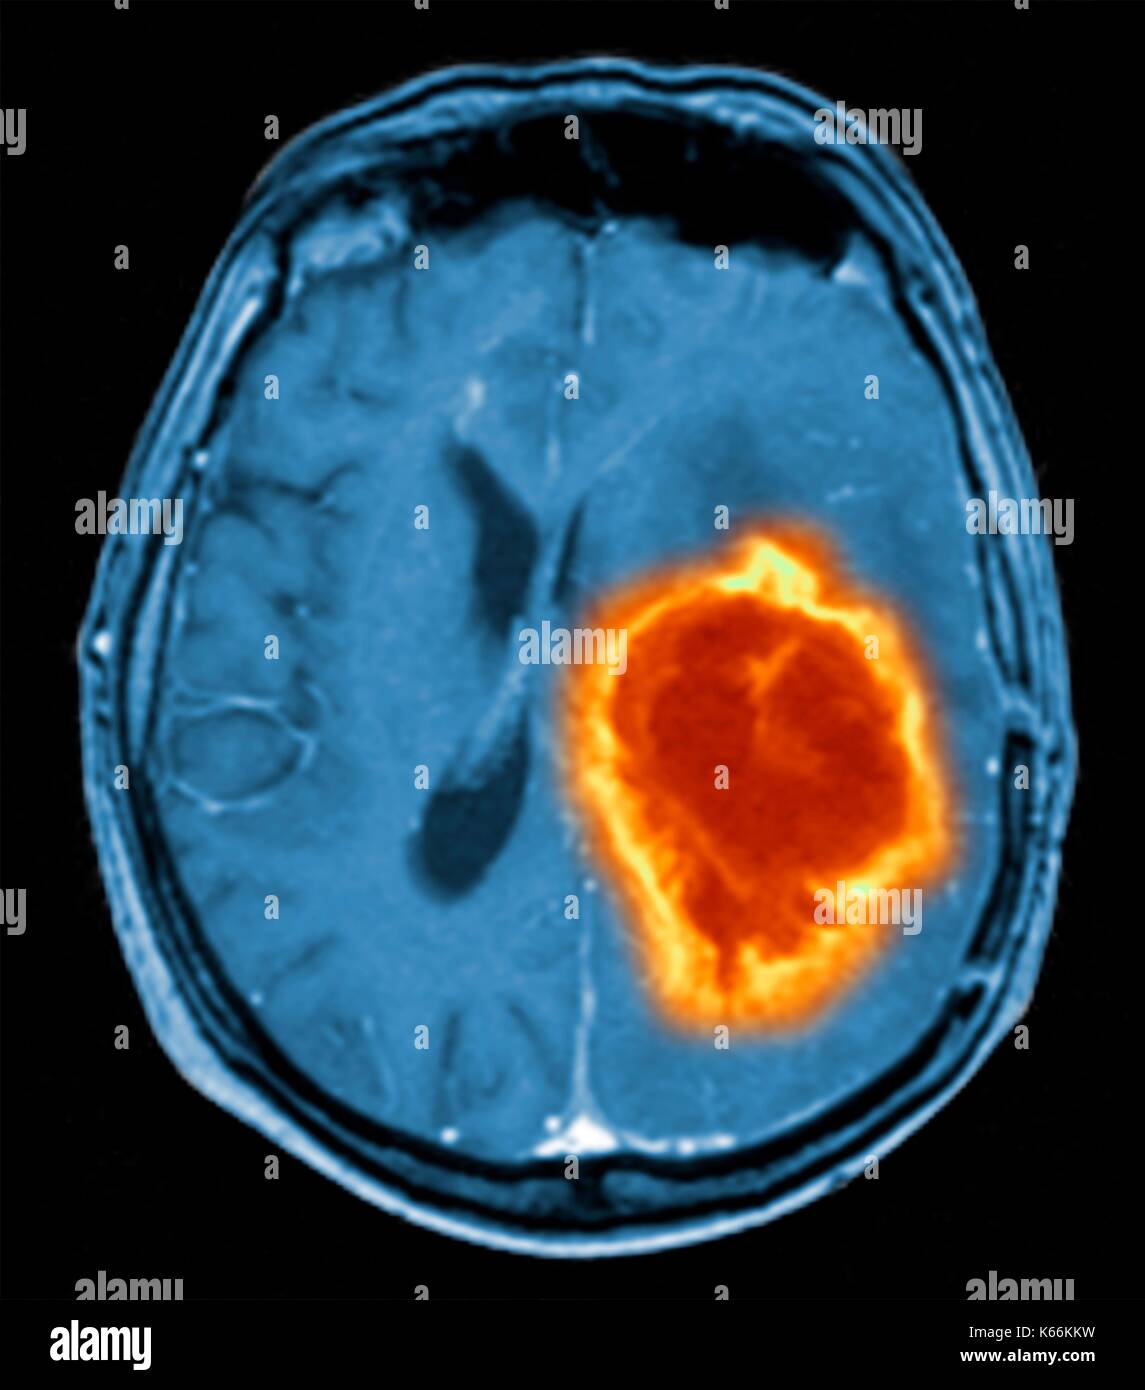 Tumor cerebral. Color de imágenes de resonancia magnética (MRI, por sus siglas en inglés) de una sección axial a través del cerebro mostrando un tumor metastásico. En la parte inferior izquierda es el tumor (rojo-amarillo) Este tumor ocurre dentro de uno de los hemisferios cerebrales; el otro hemisferio está a la derecha. Los globos oculares - no visible -están en la parte superior. Cáncer metastásico es una enfermedad secundaria de propagación del cáncer en otra parte del cuerpo. Los tumores metastásicos del cerebro son malignos. Suelen causar compresión del cerebro y nervios Foto de stock